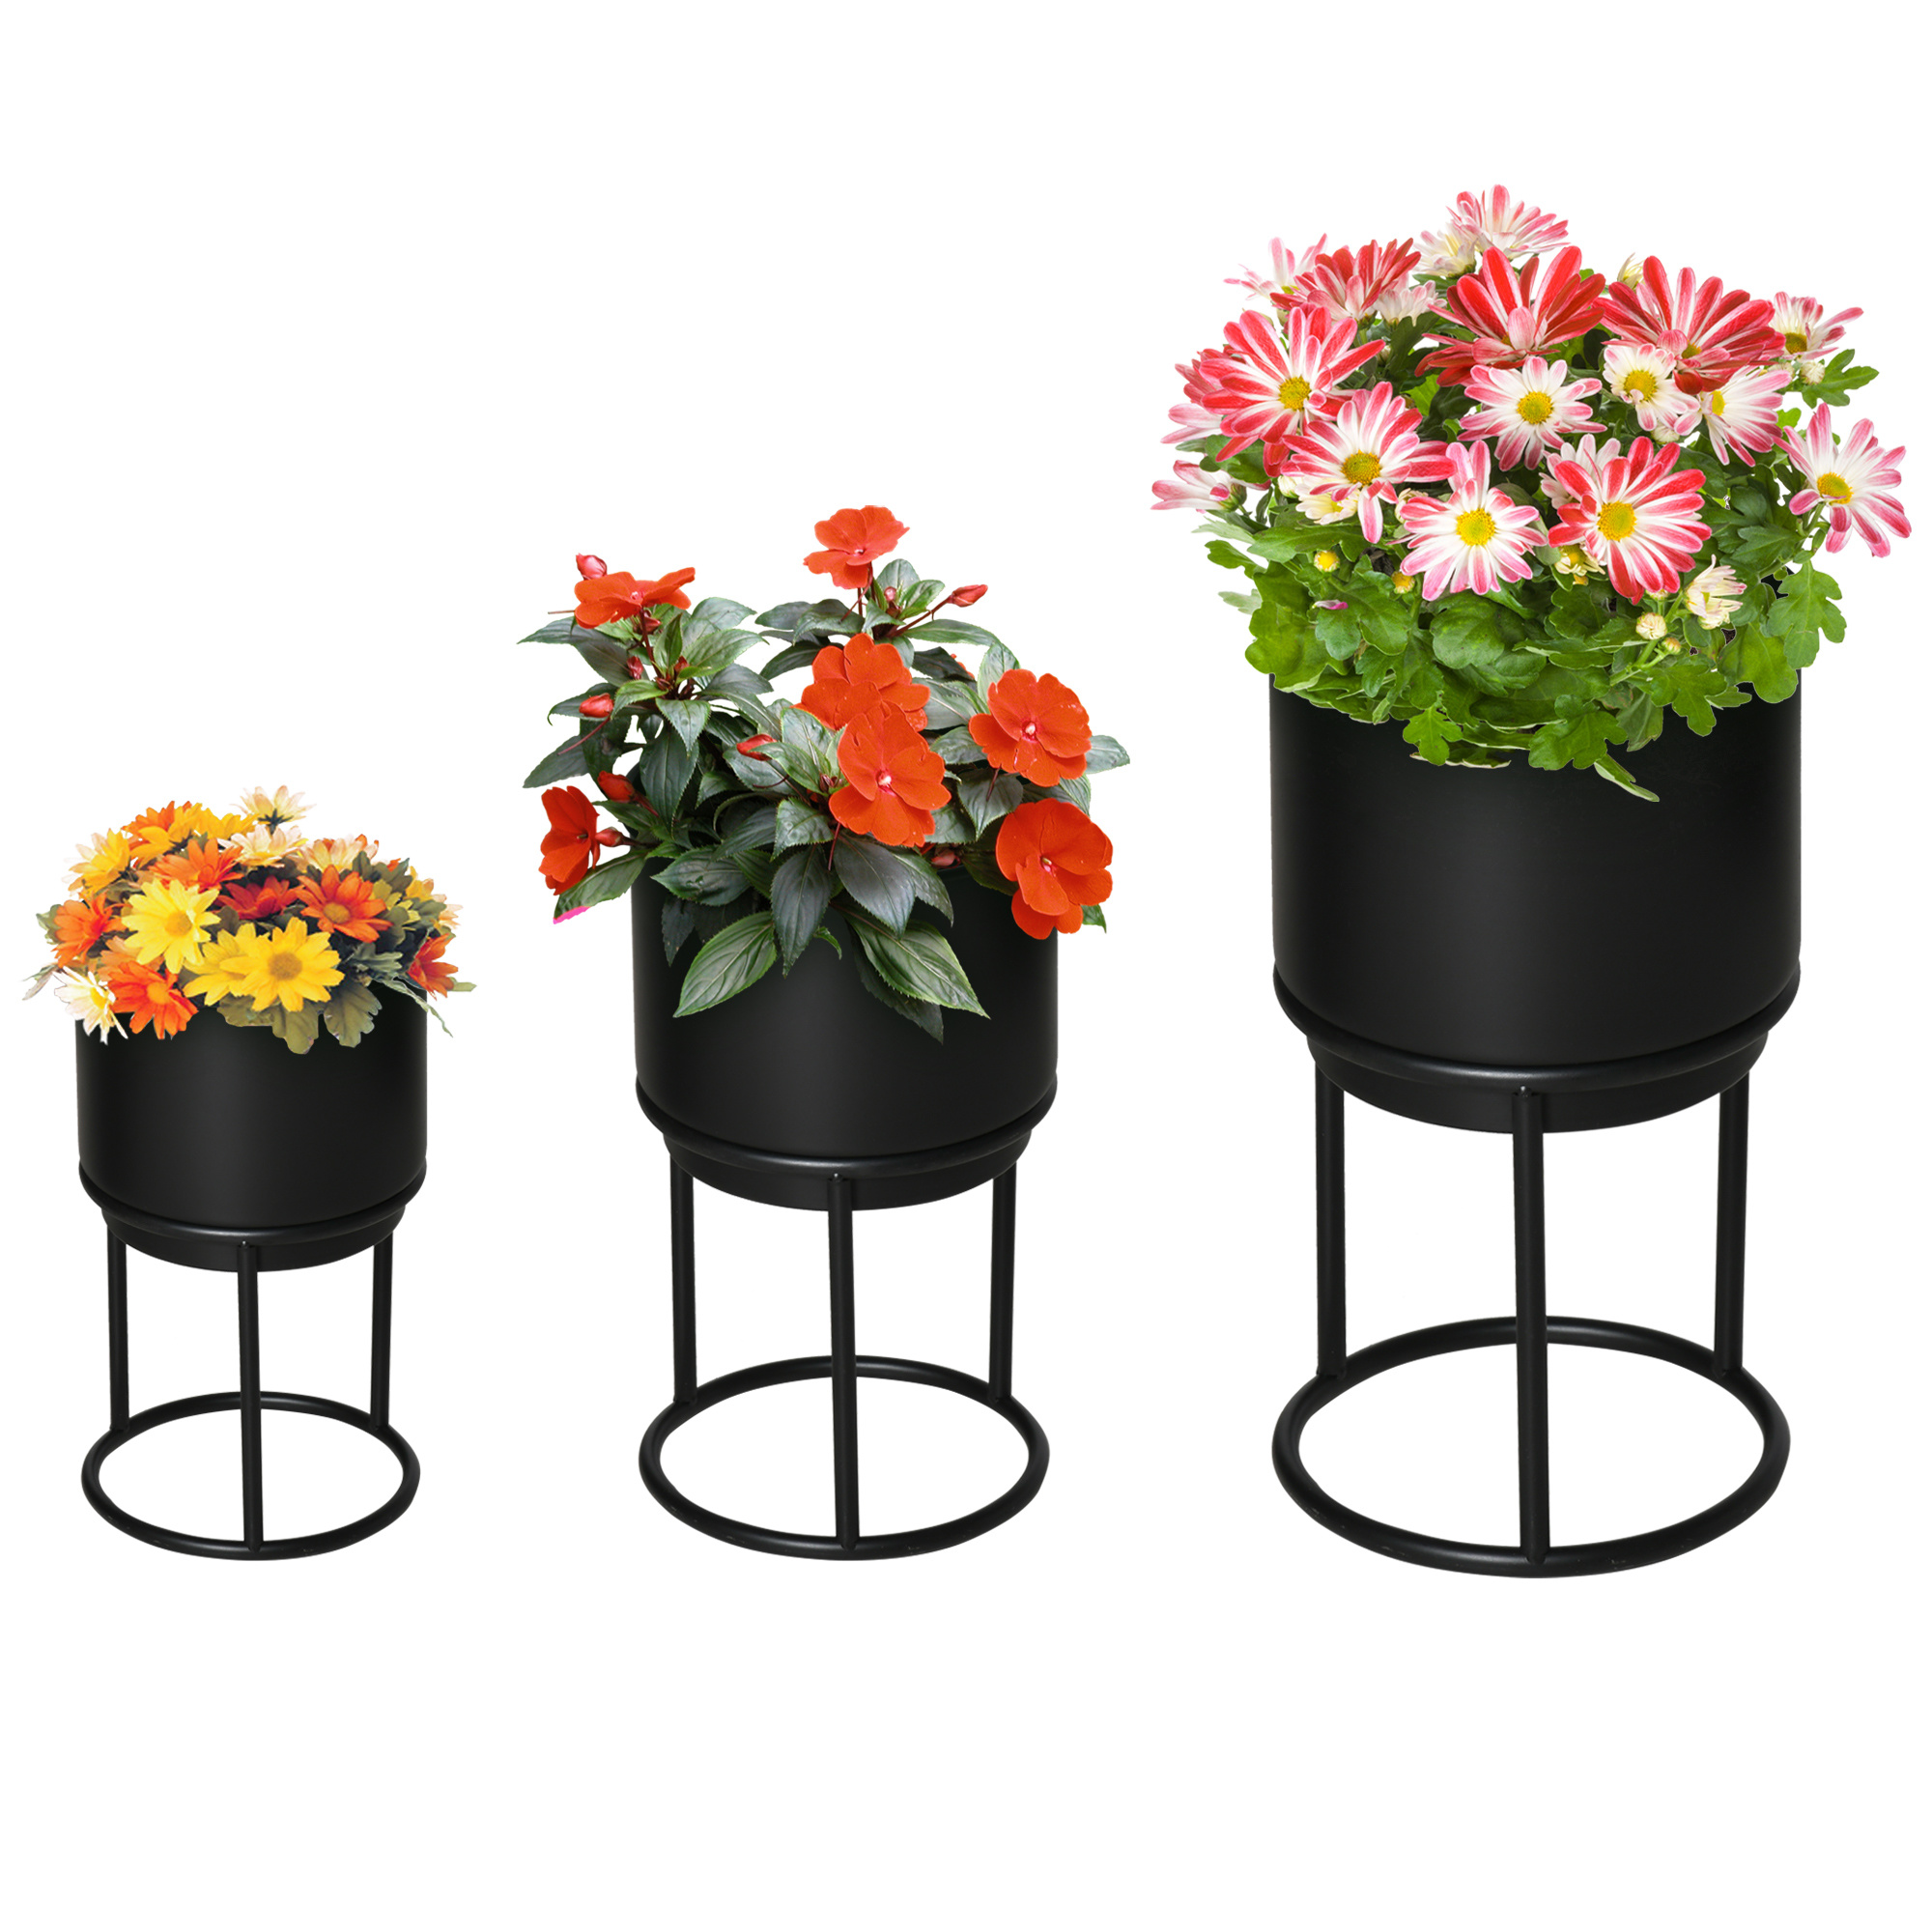 Sunny set van 3 bloemstandaards met bloempot van metaal zwart